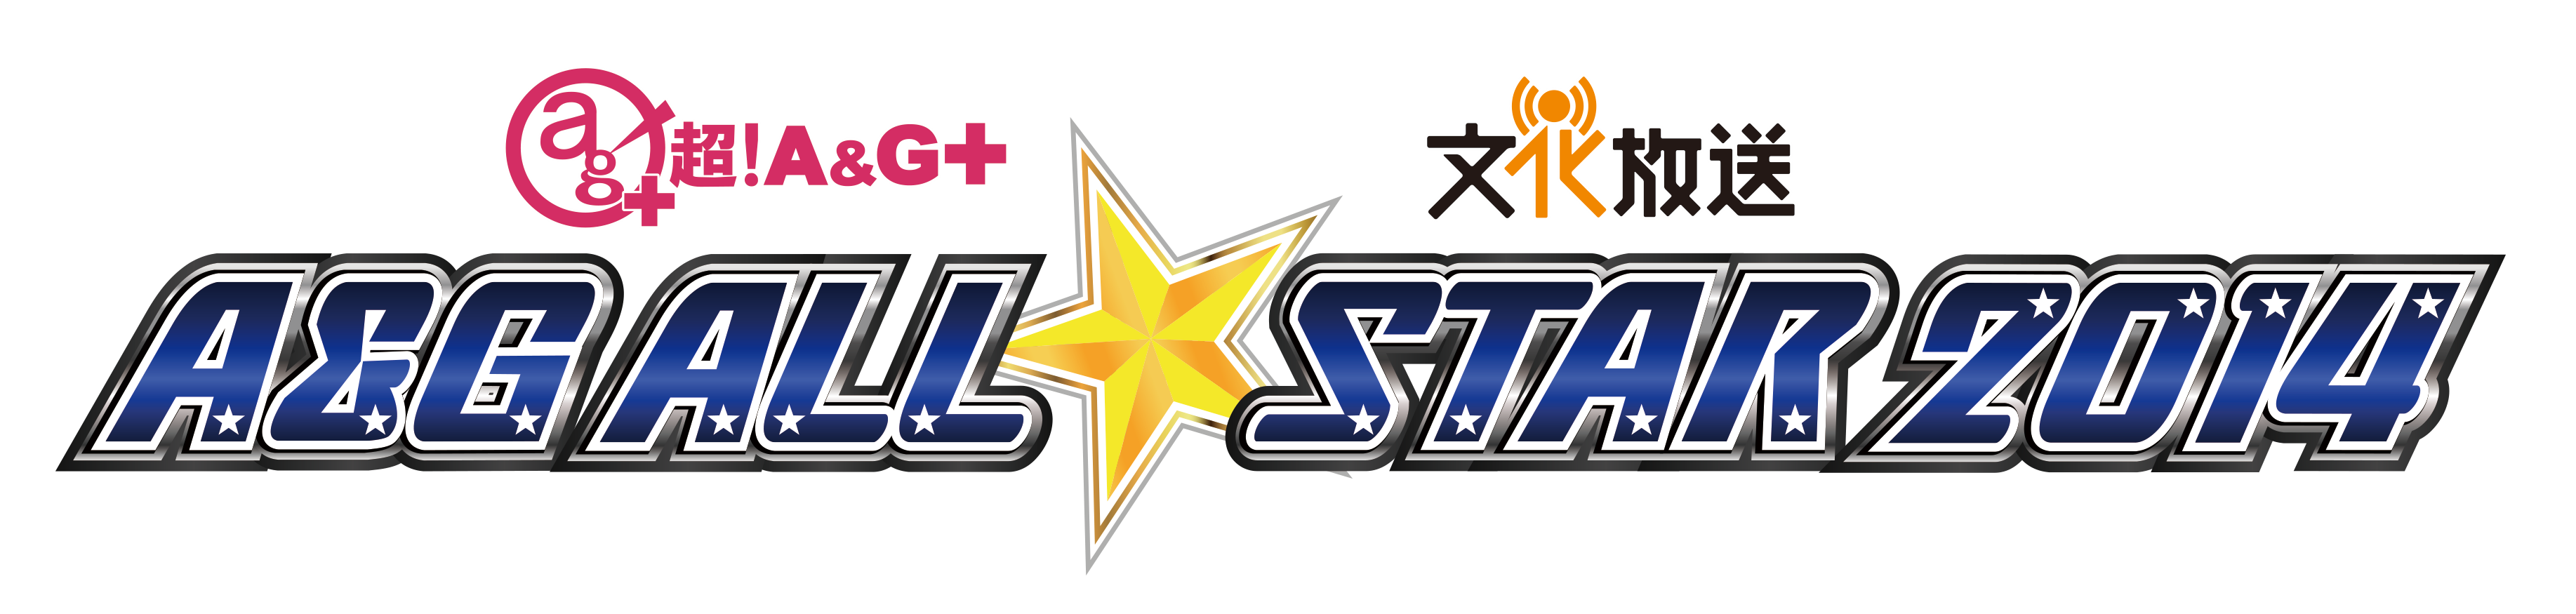 allstar2014_logo.png